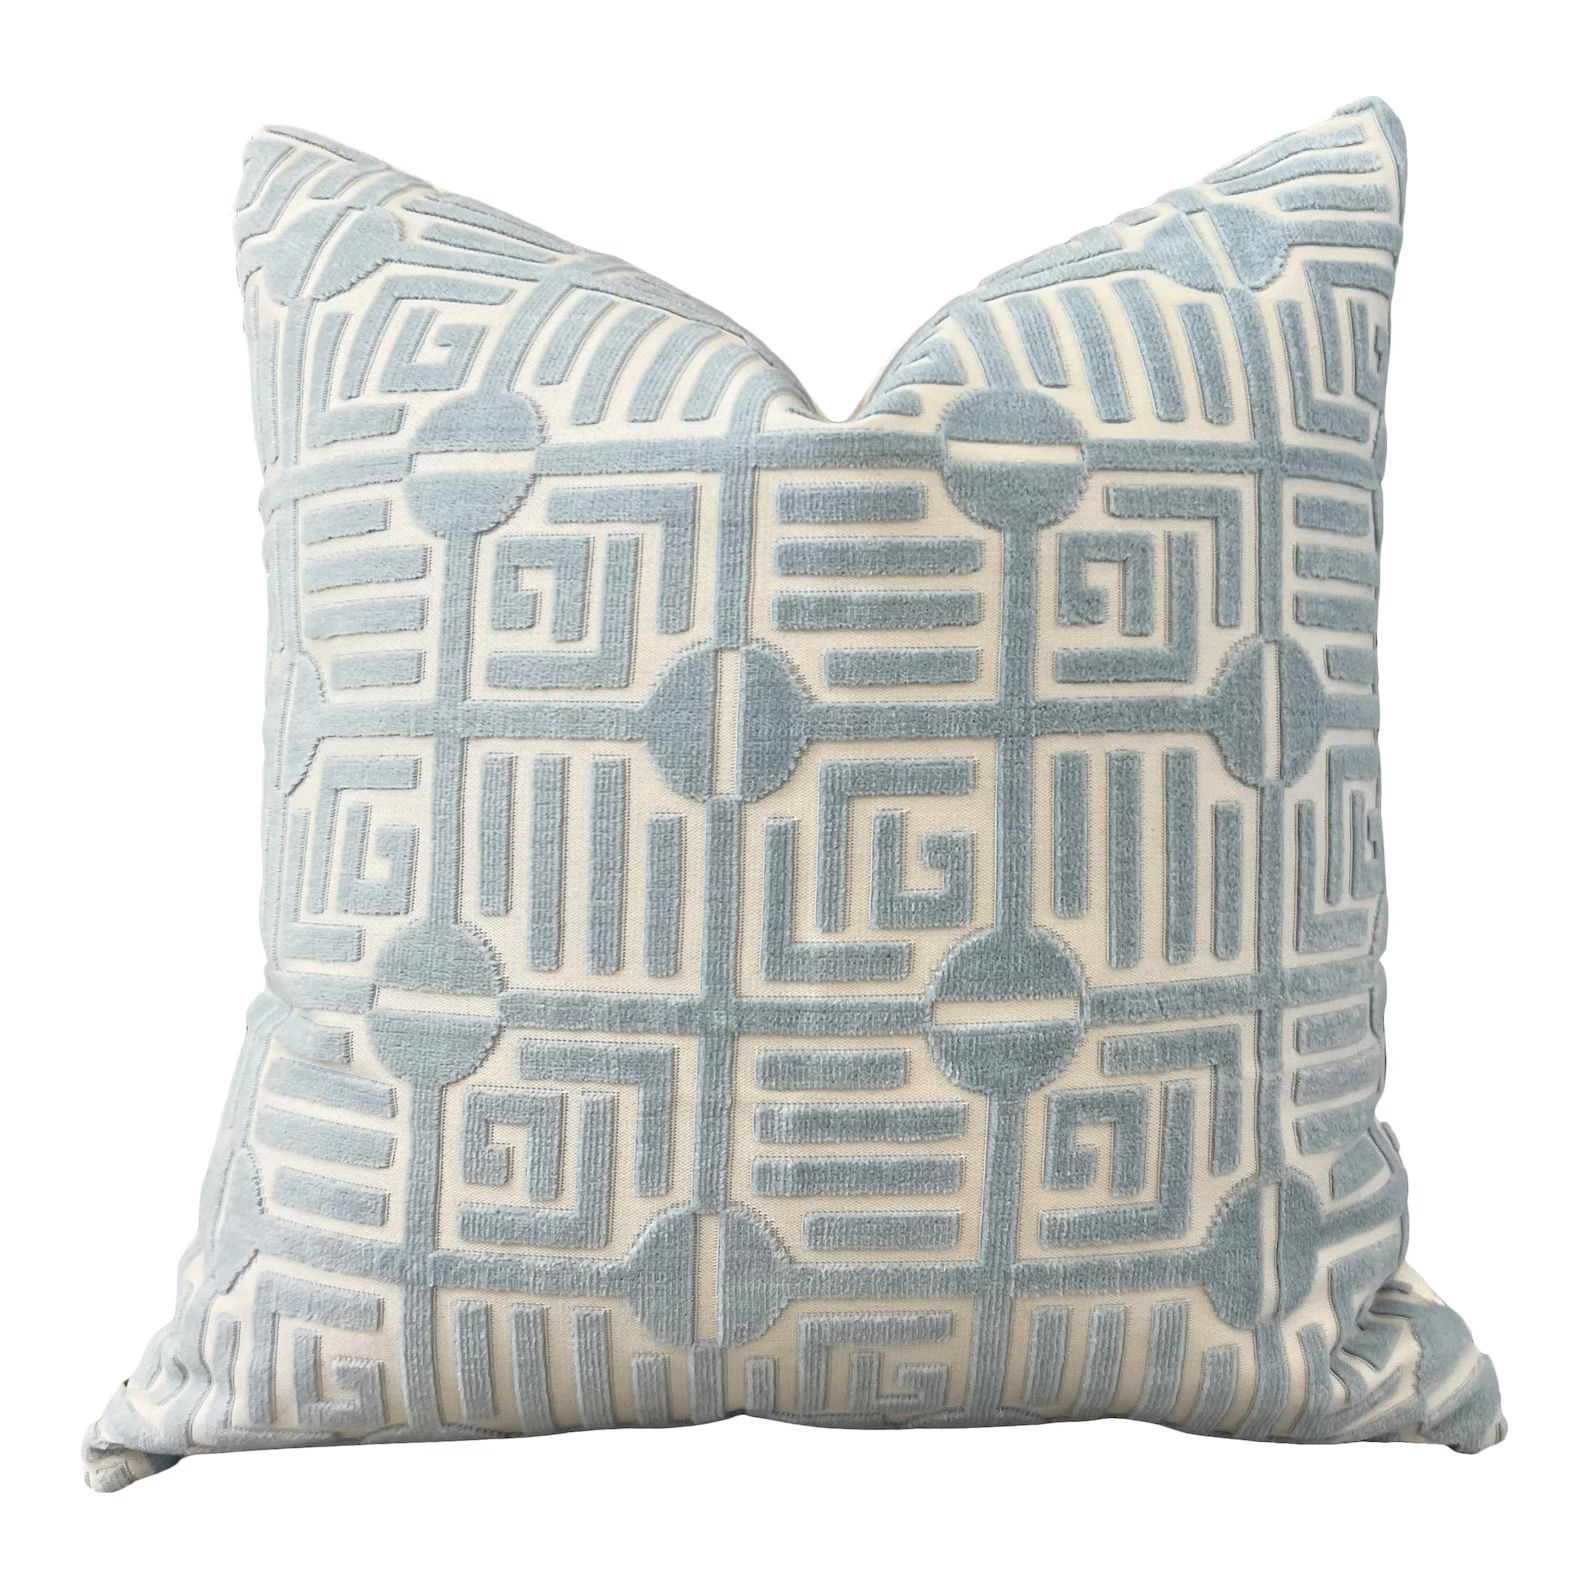 Thibaut Labyrinth Velvet Pillow in Spa Blue. High End Pillows, Designer Raised Velvet Pillows, Ge... | Etsy (US)